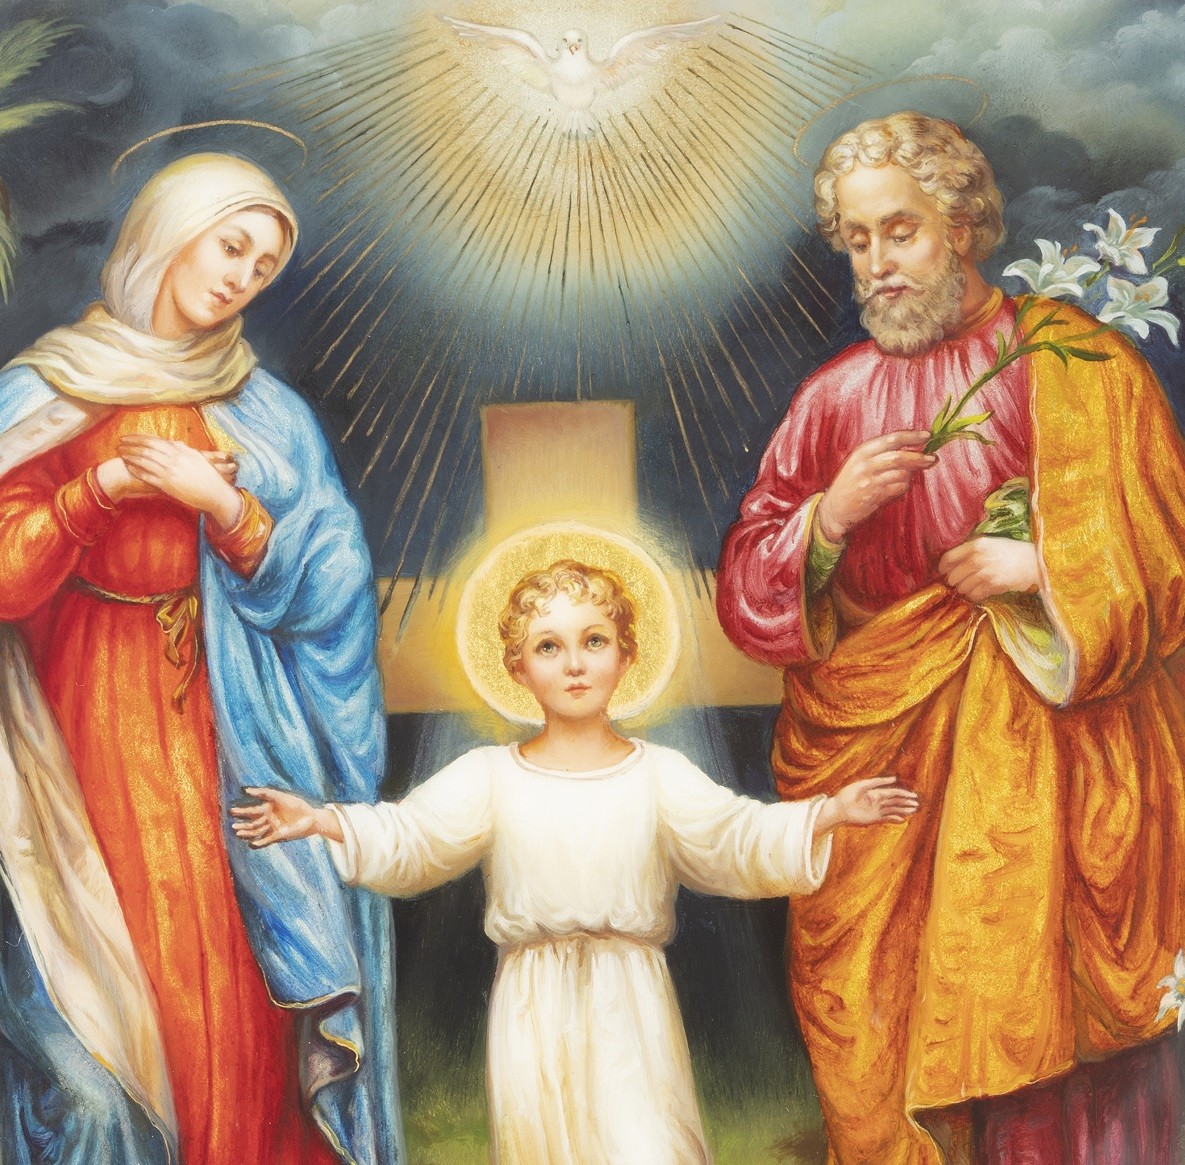 Икона католическая Святое семейство (роспись Федоскино)